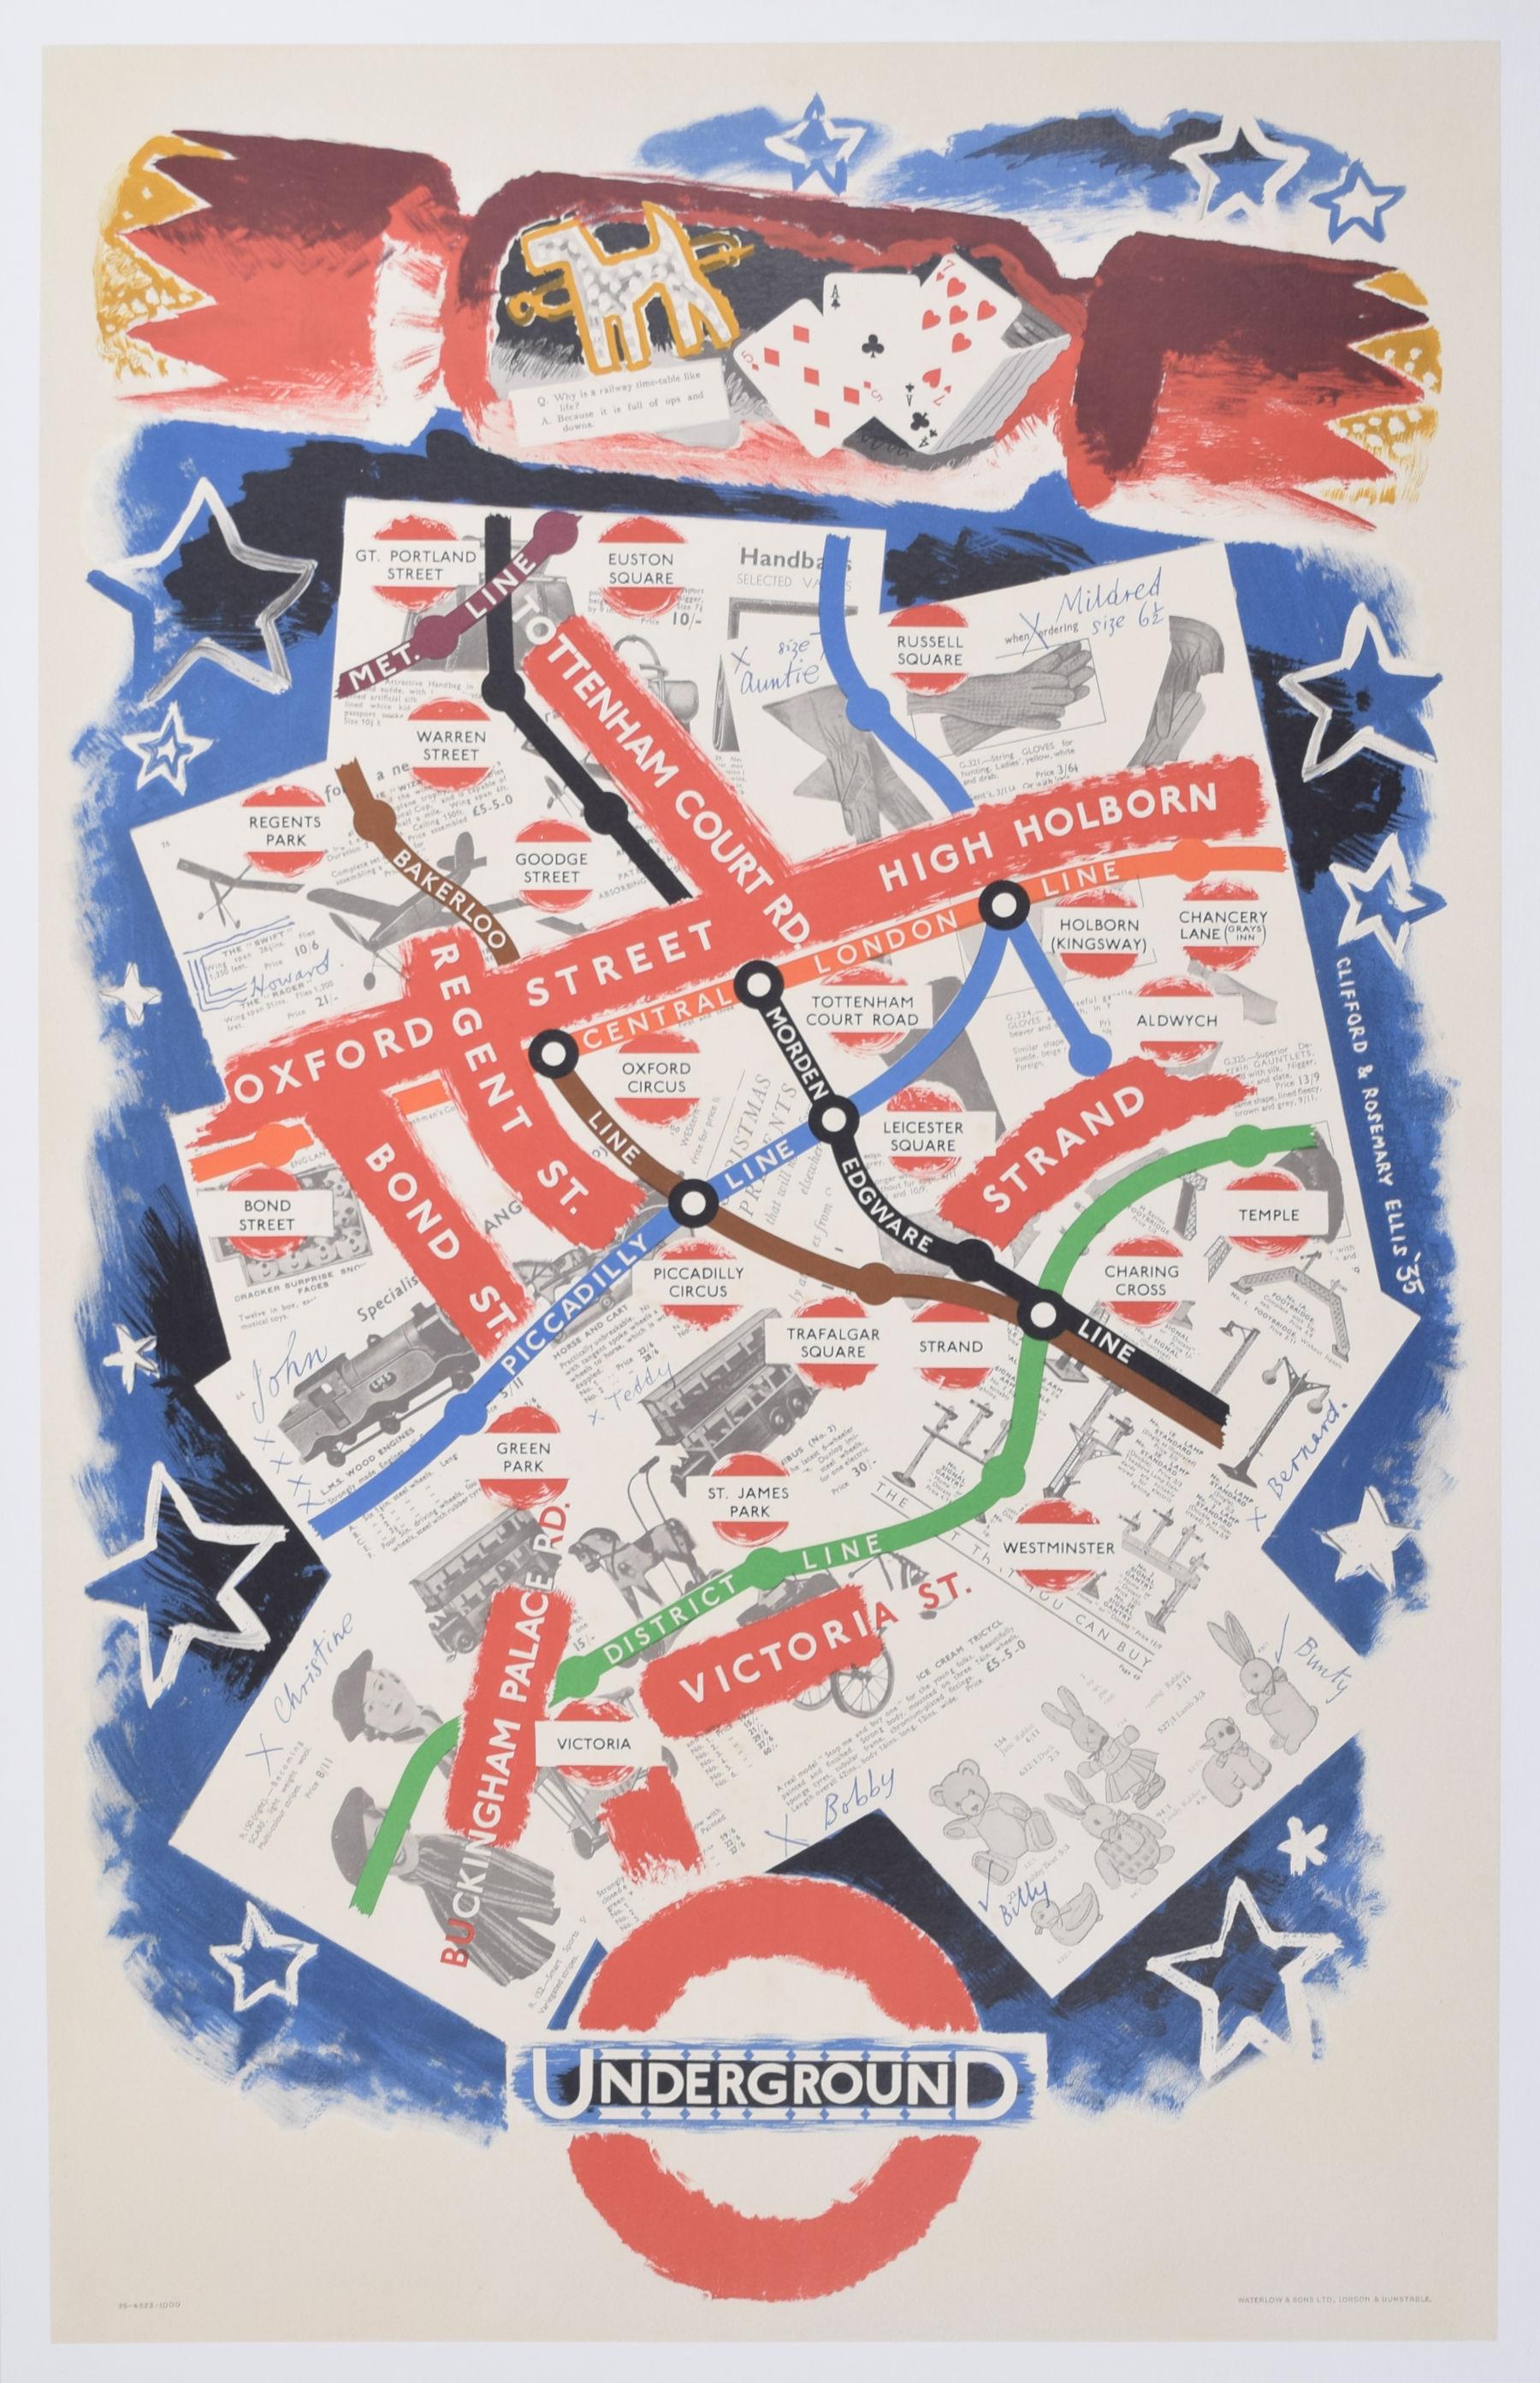 Pour voir nos autres affiches de voyage vintage originales, y compris d'autres affiches de London Transport d'avant-guerre, faites défiler vers le bas jusqu'à "More from this Seller" et en dessous cliquez sur "See all from this Seller" - ou